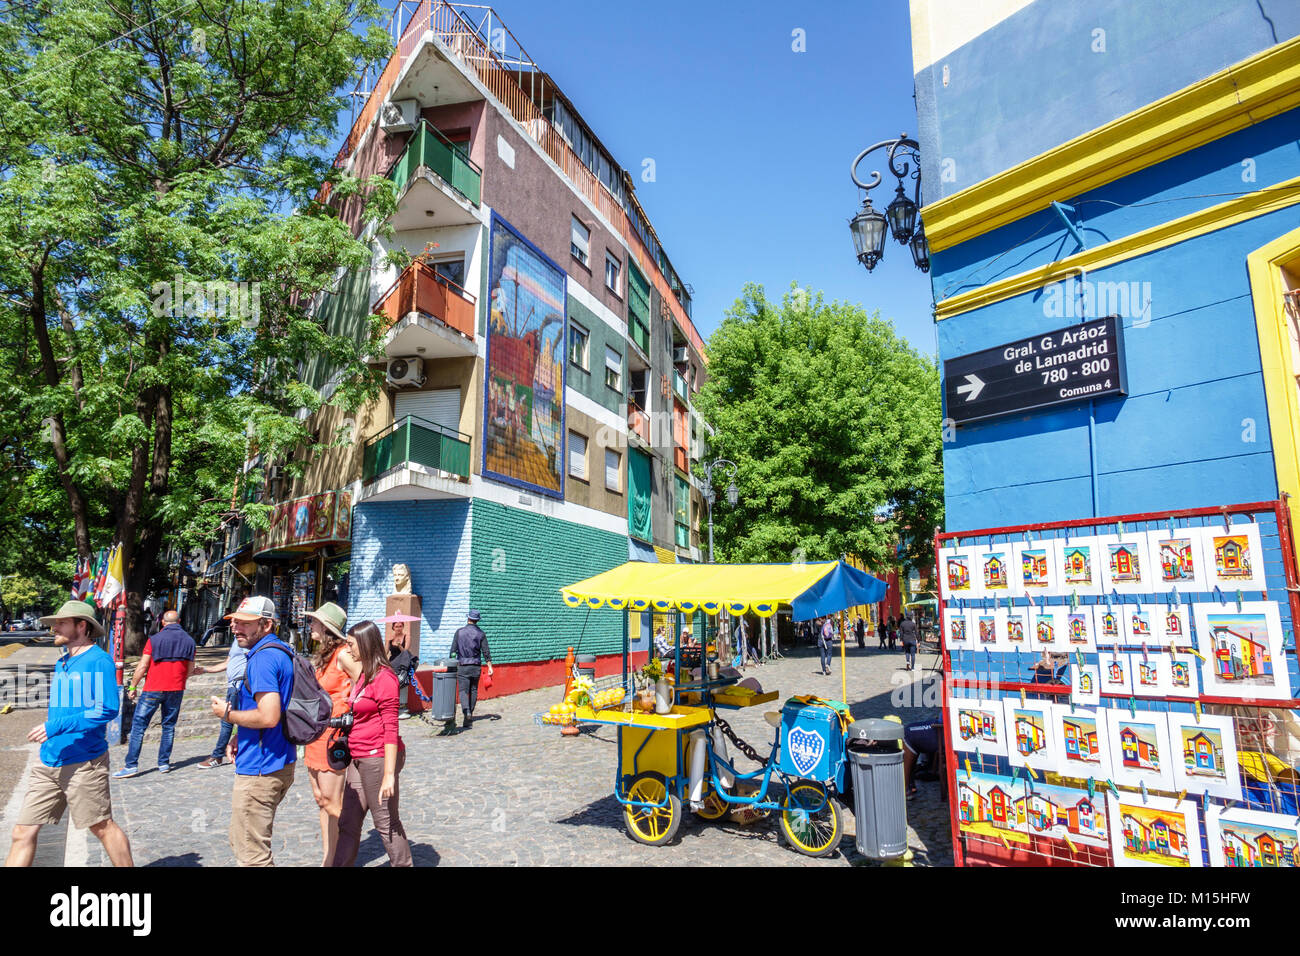 Buenos Aires Argentinien,Caminito Barrio de la Boca,Straßenmuseum,Immigrantenviertel,bunt bemalte Gebäude,Verkäufer Verkäufer verkaufen,s Stockfoto